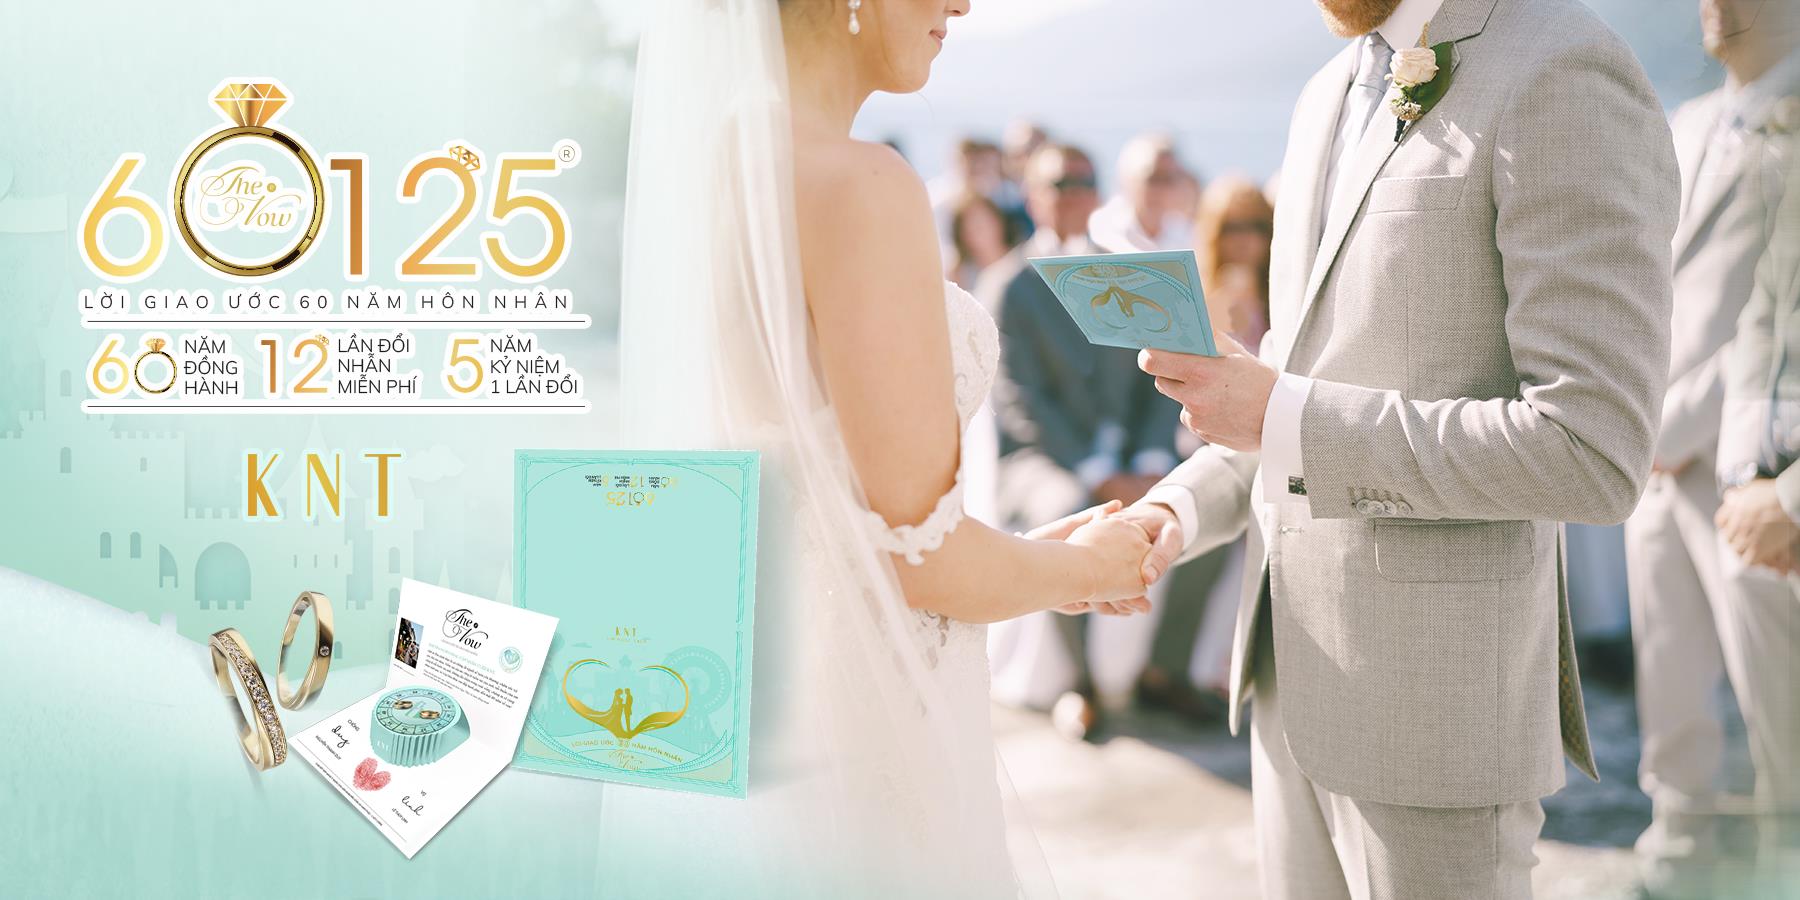 The Vow 60125: Quà tặng độc quyền giúp bạn duy trì cuộc hôn nhân bền vững - Ảnh 3.